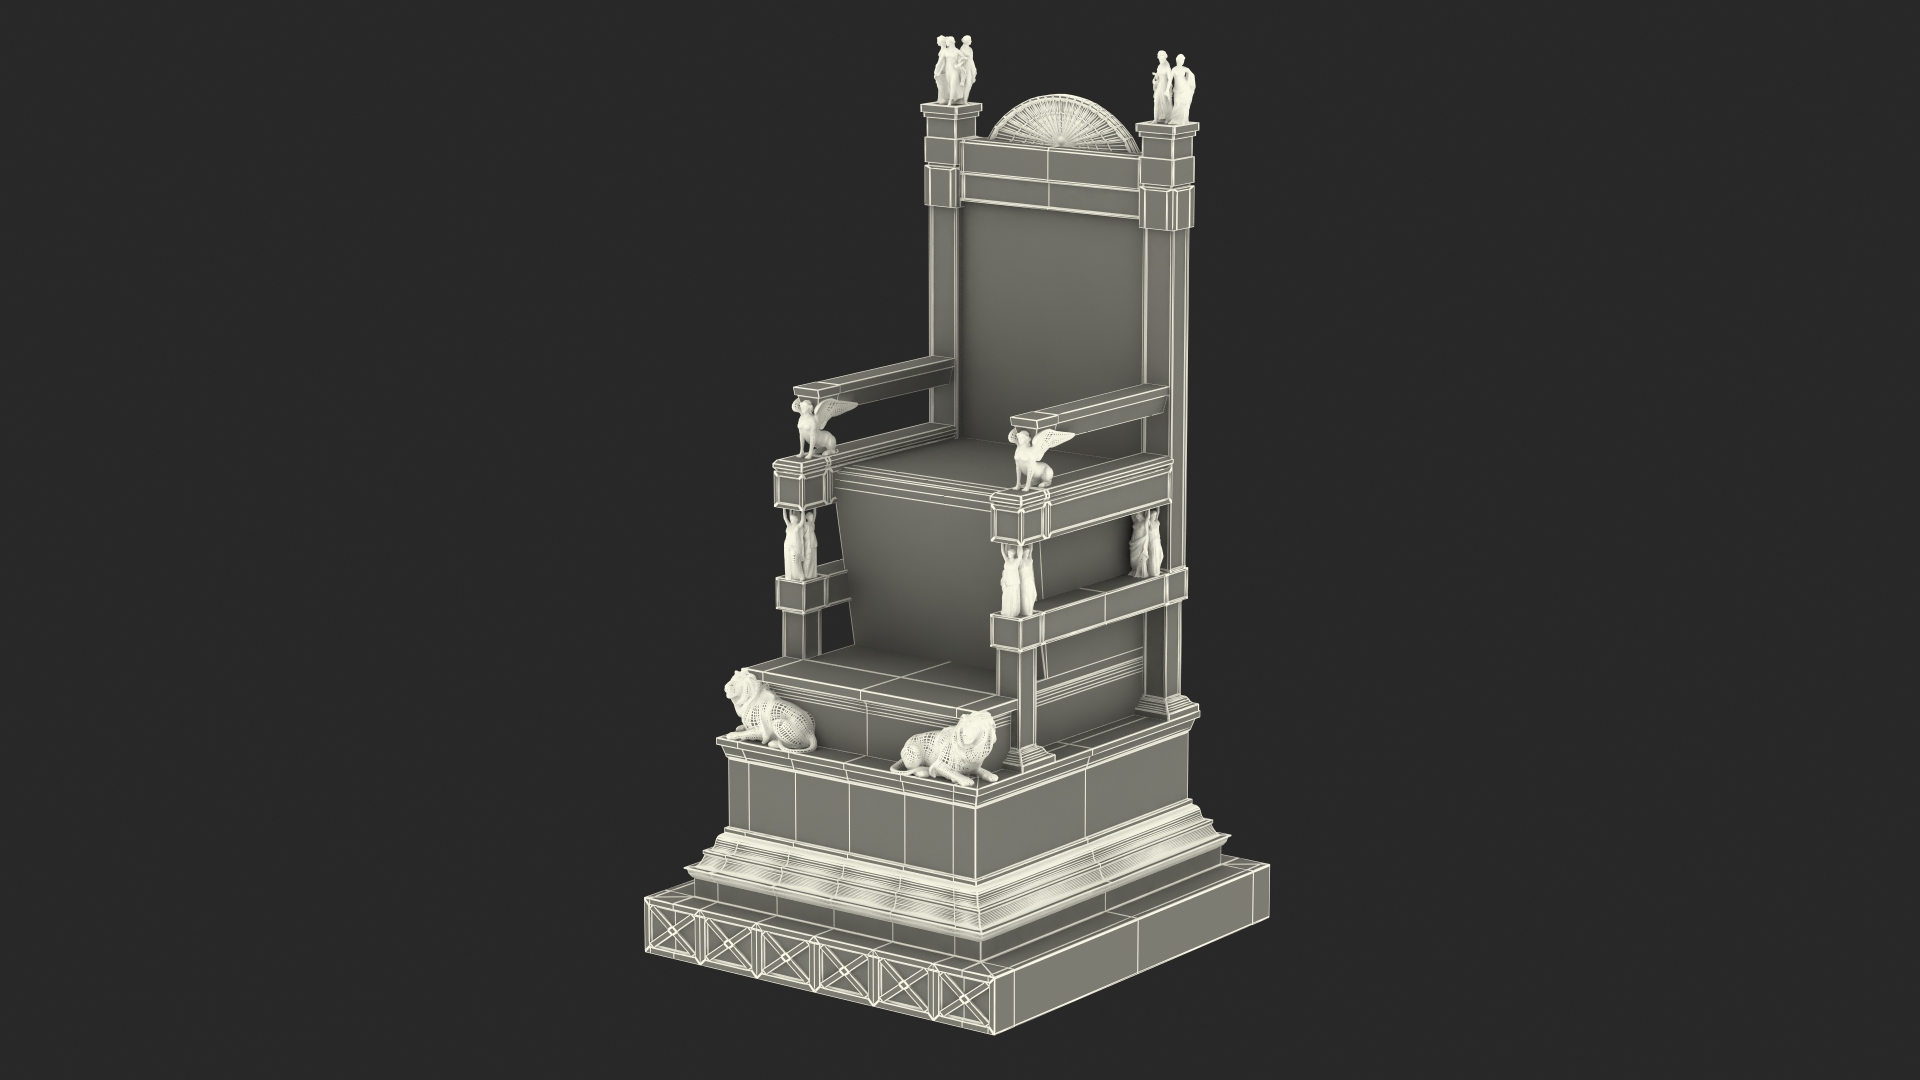 zeus throne